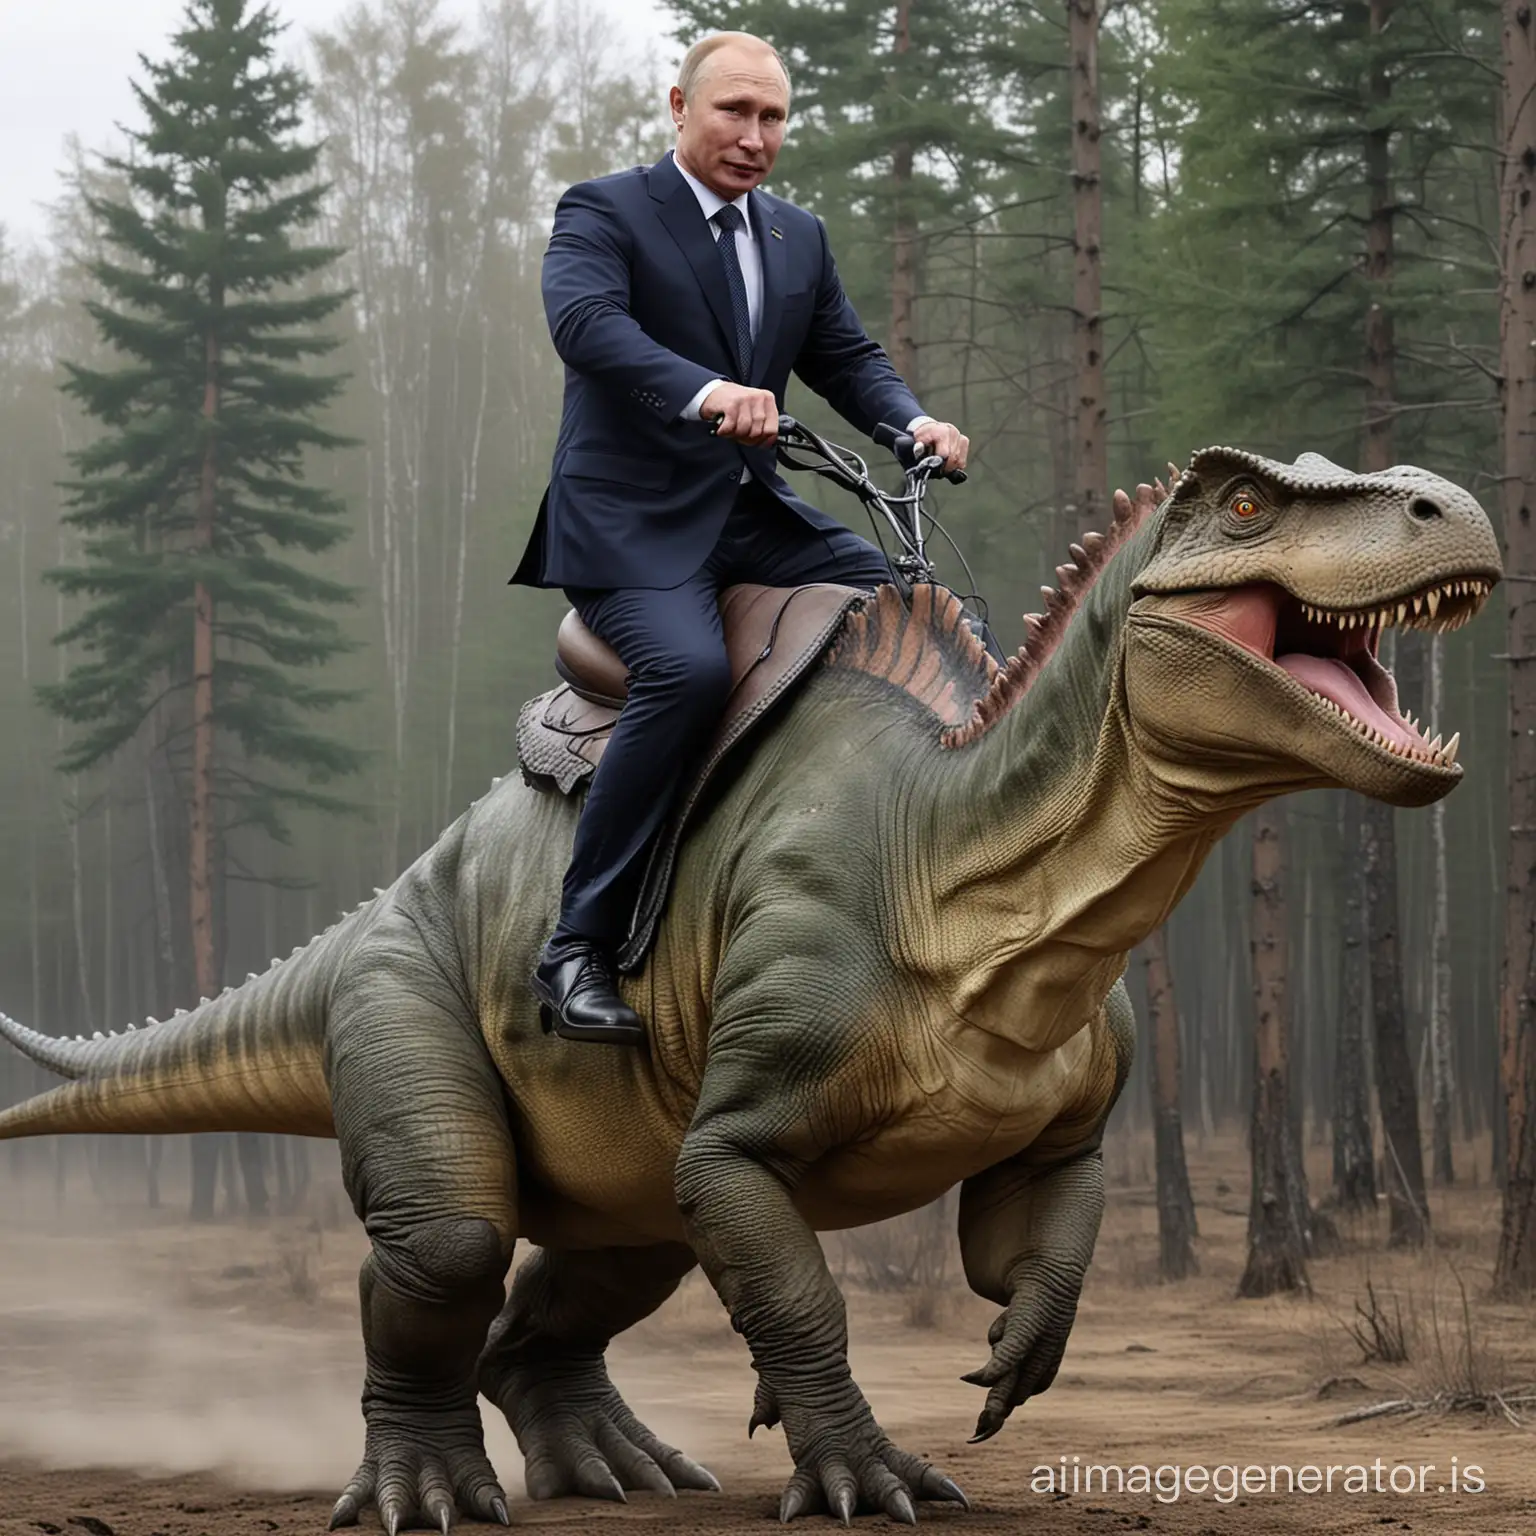 Putin riding dinosaur